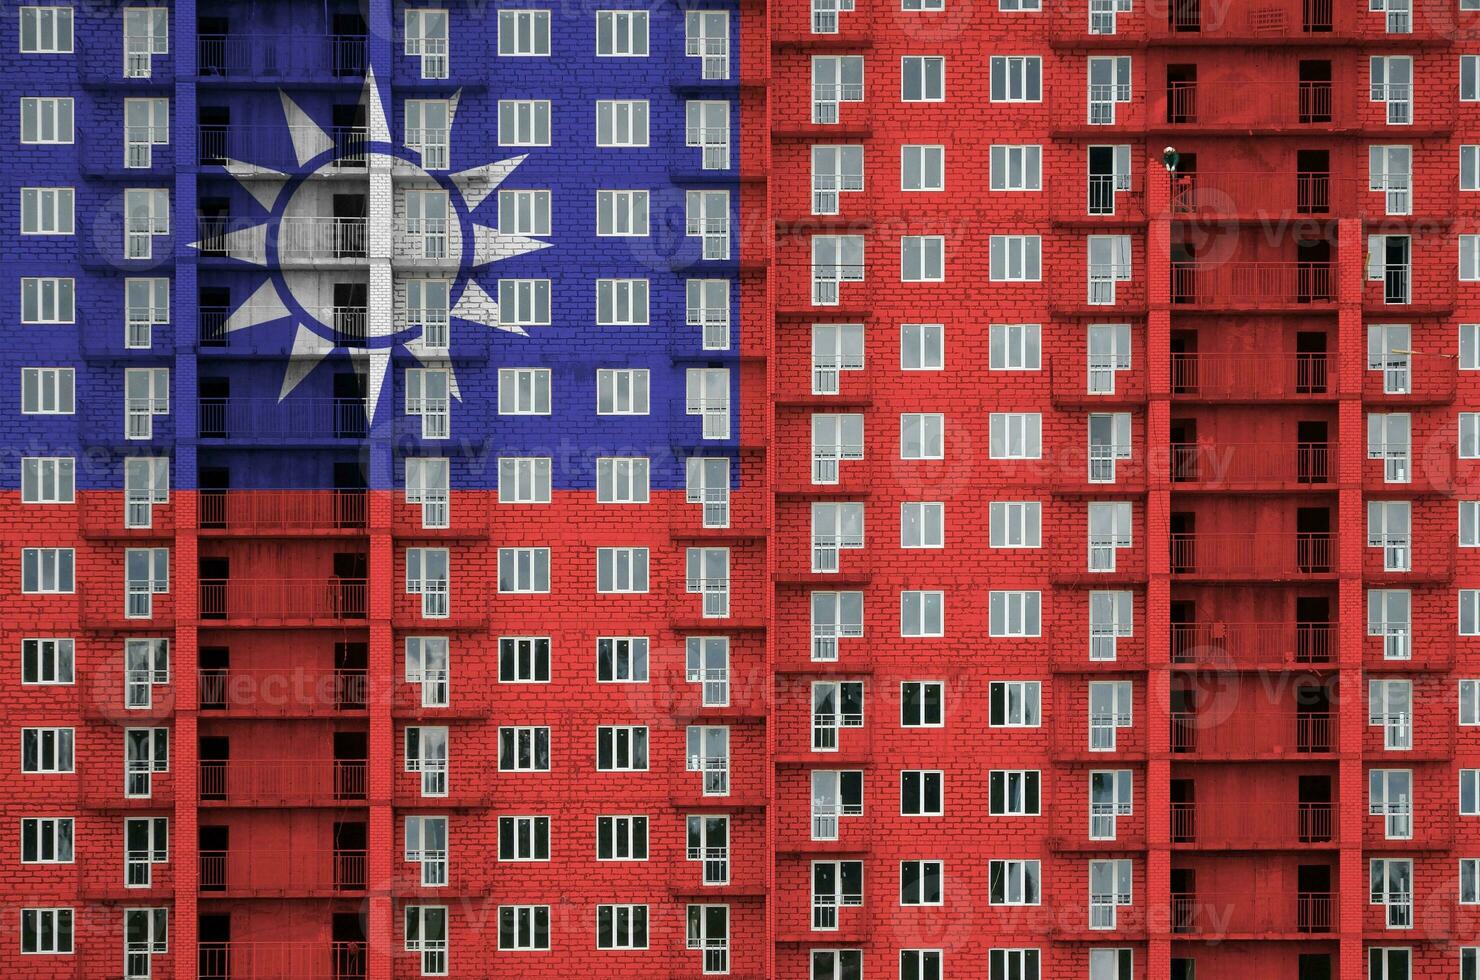 taiwan flagga avbildad i måla färger på flera våningar bosatt byggnad under konstruktion. texturerad baner på tegel vägg bakgrund foto